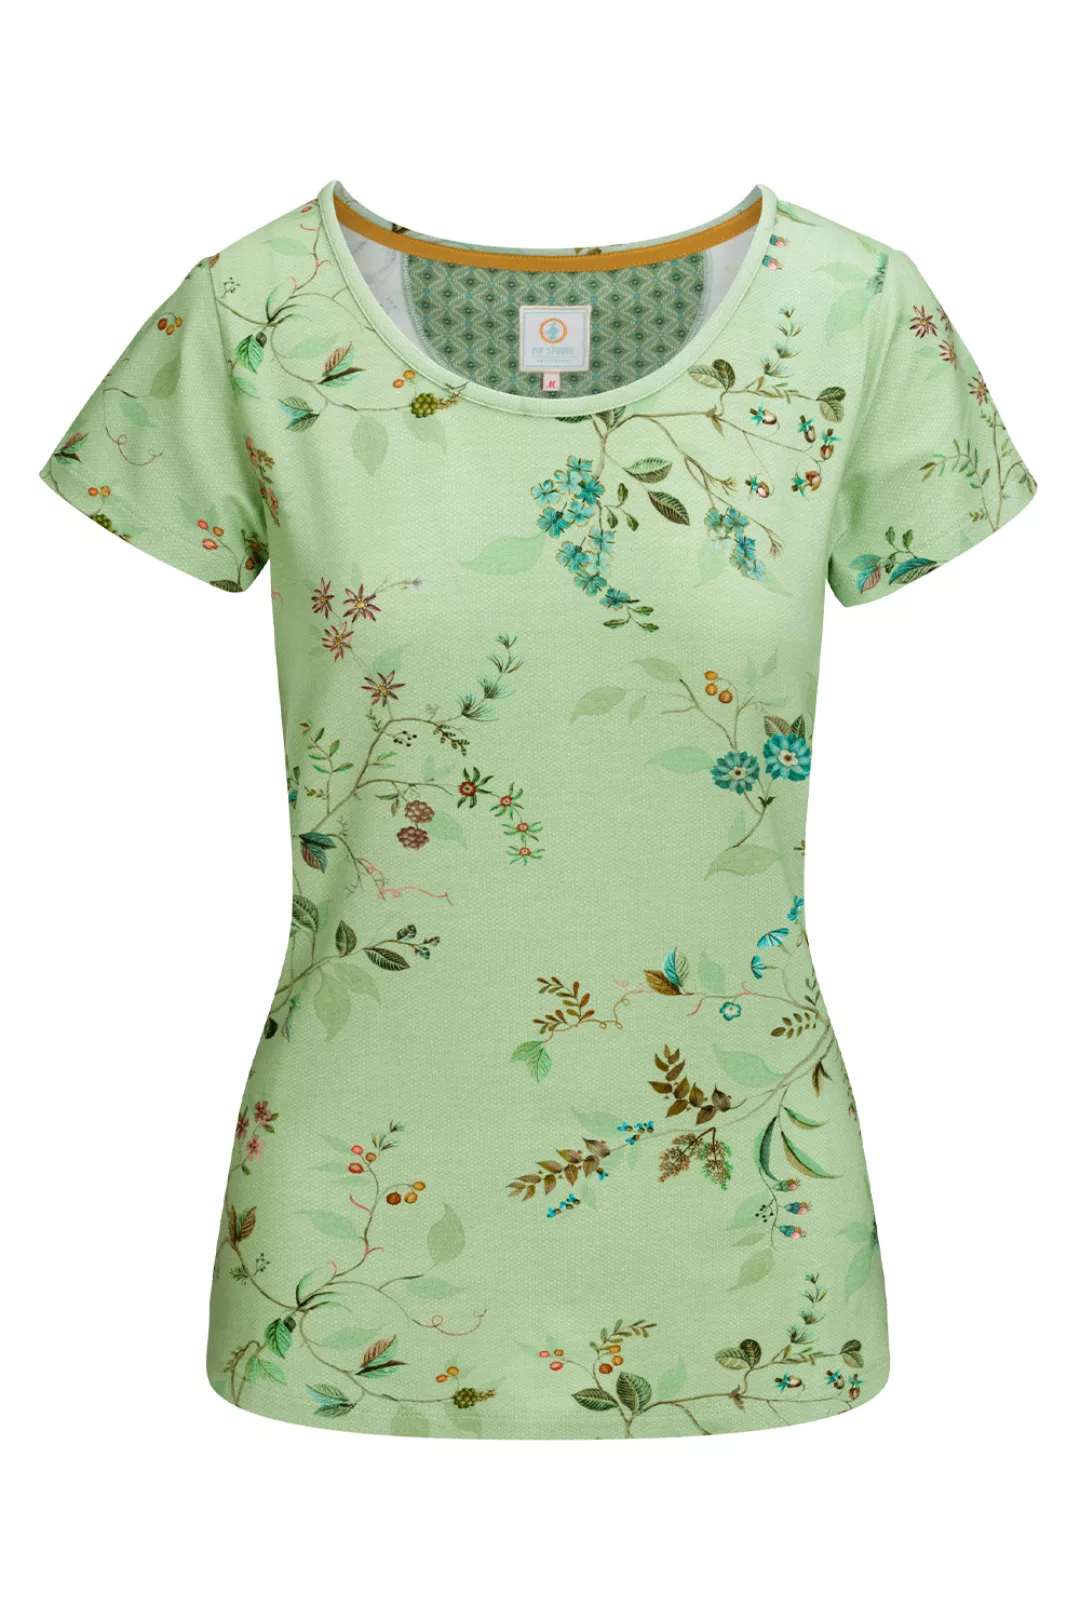 Pip Studio Tilly Kawai Flower Top Short Sleeve Loungewear 2023 38 grün günstig online kaufen